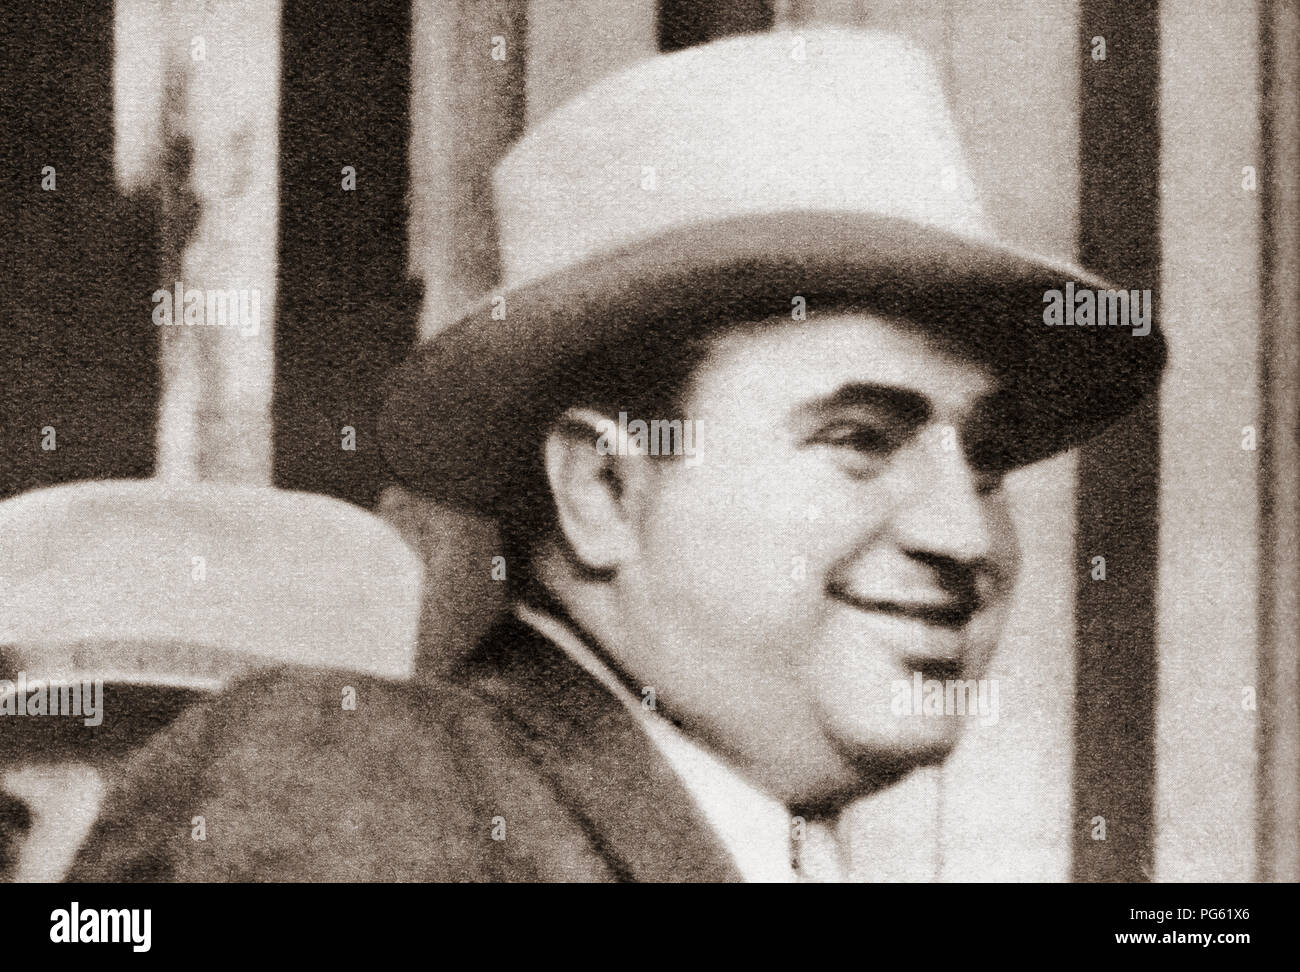 Alphonse Gabriel Capone, 1899 - 1947, talvolta noto con il soprannome di "carface'. Il gangster americano e imprenditore. Da questi straordinari anni, pubblicato in 1938. Foto Stock